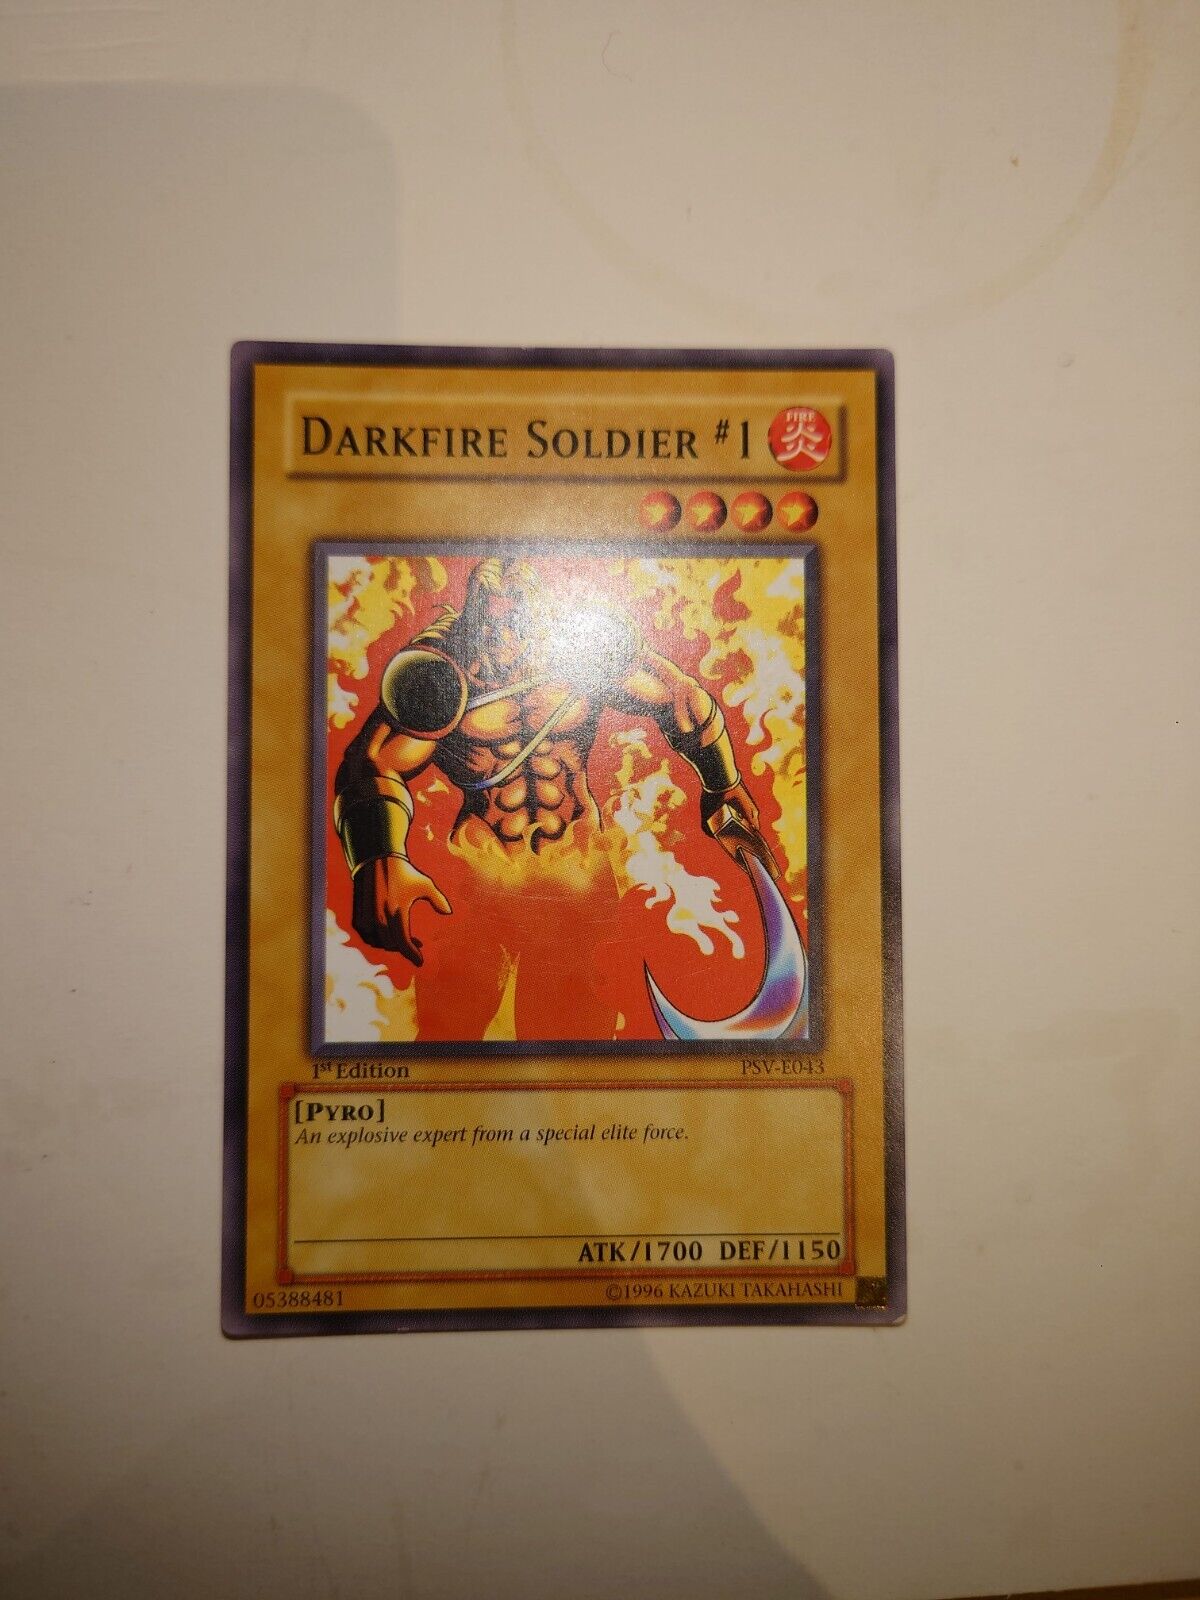 Darkfire Soldier #1 - 1st Edition PSV-E043 - YuGiOh